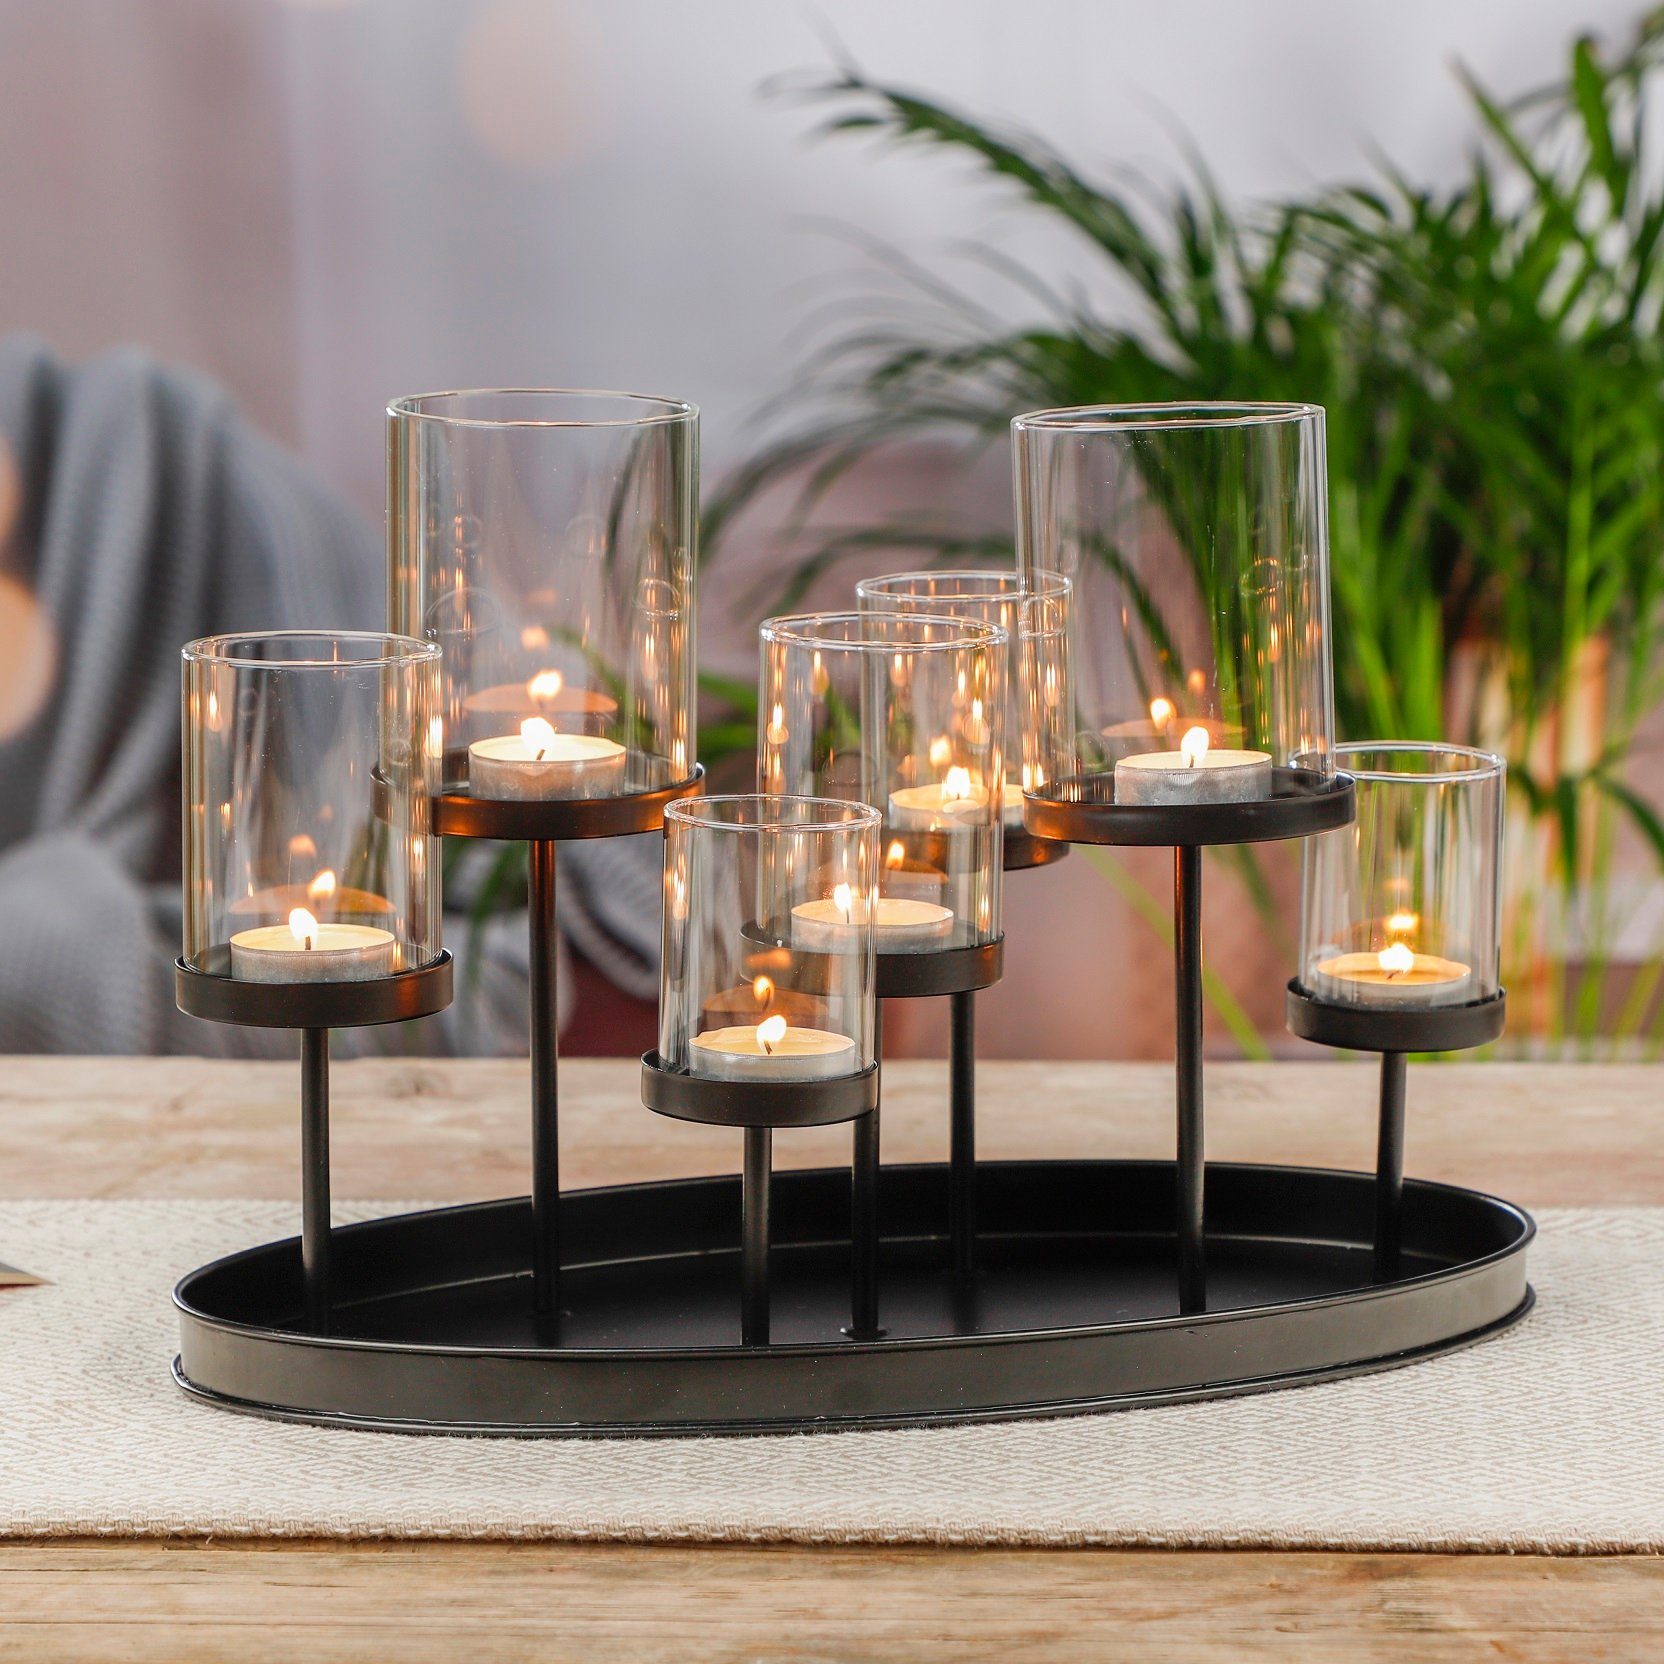 Kerzentablett Kerzentablett Teelichthalter Windlicht schwarz GartenHero Glas Kerzenständer Kerzenhalter